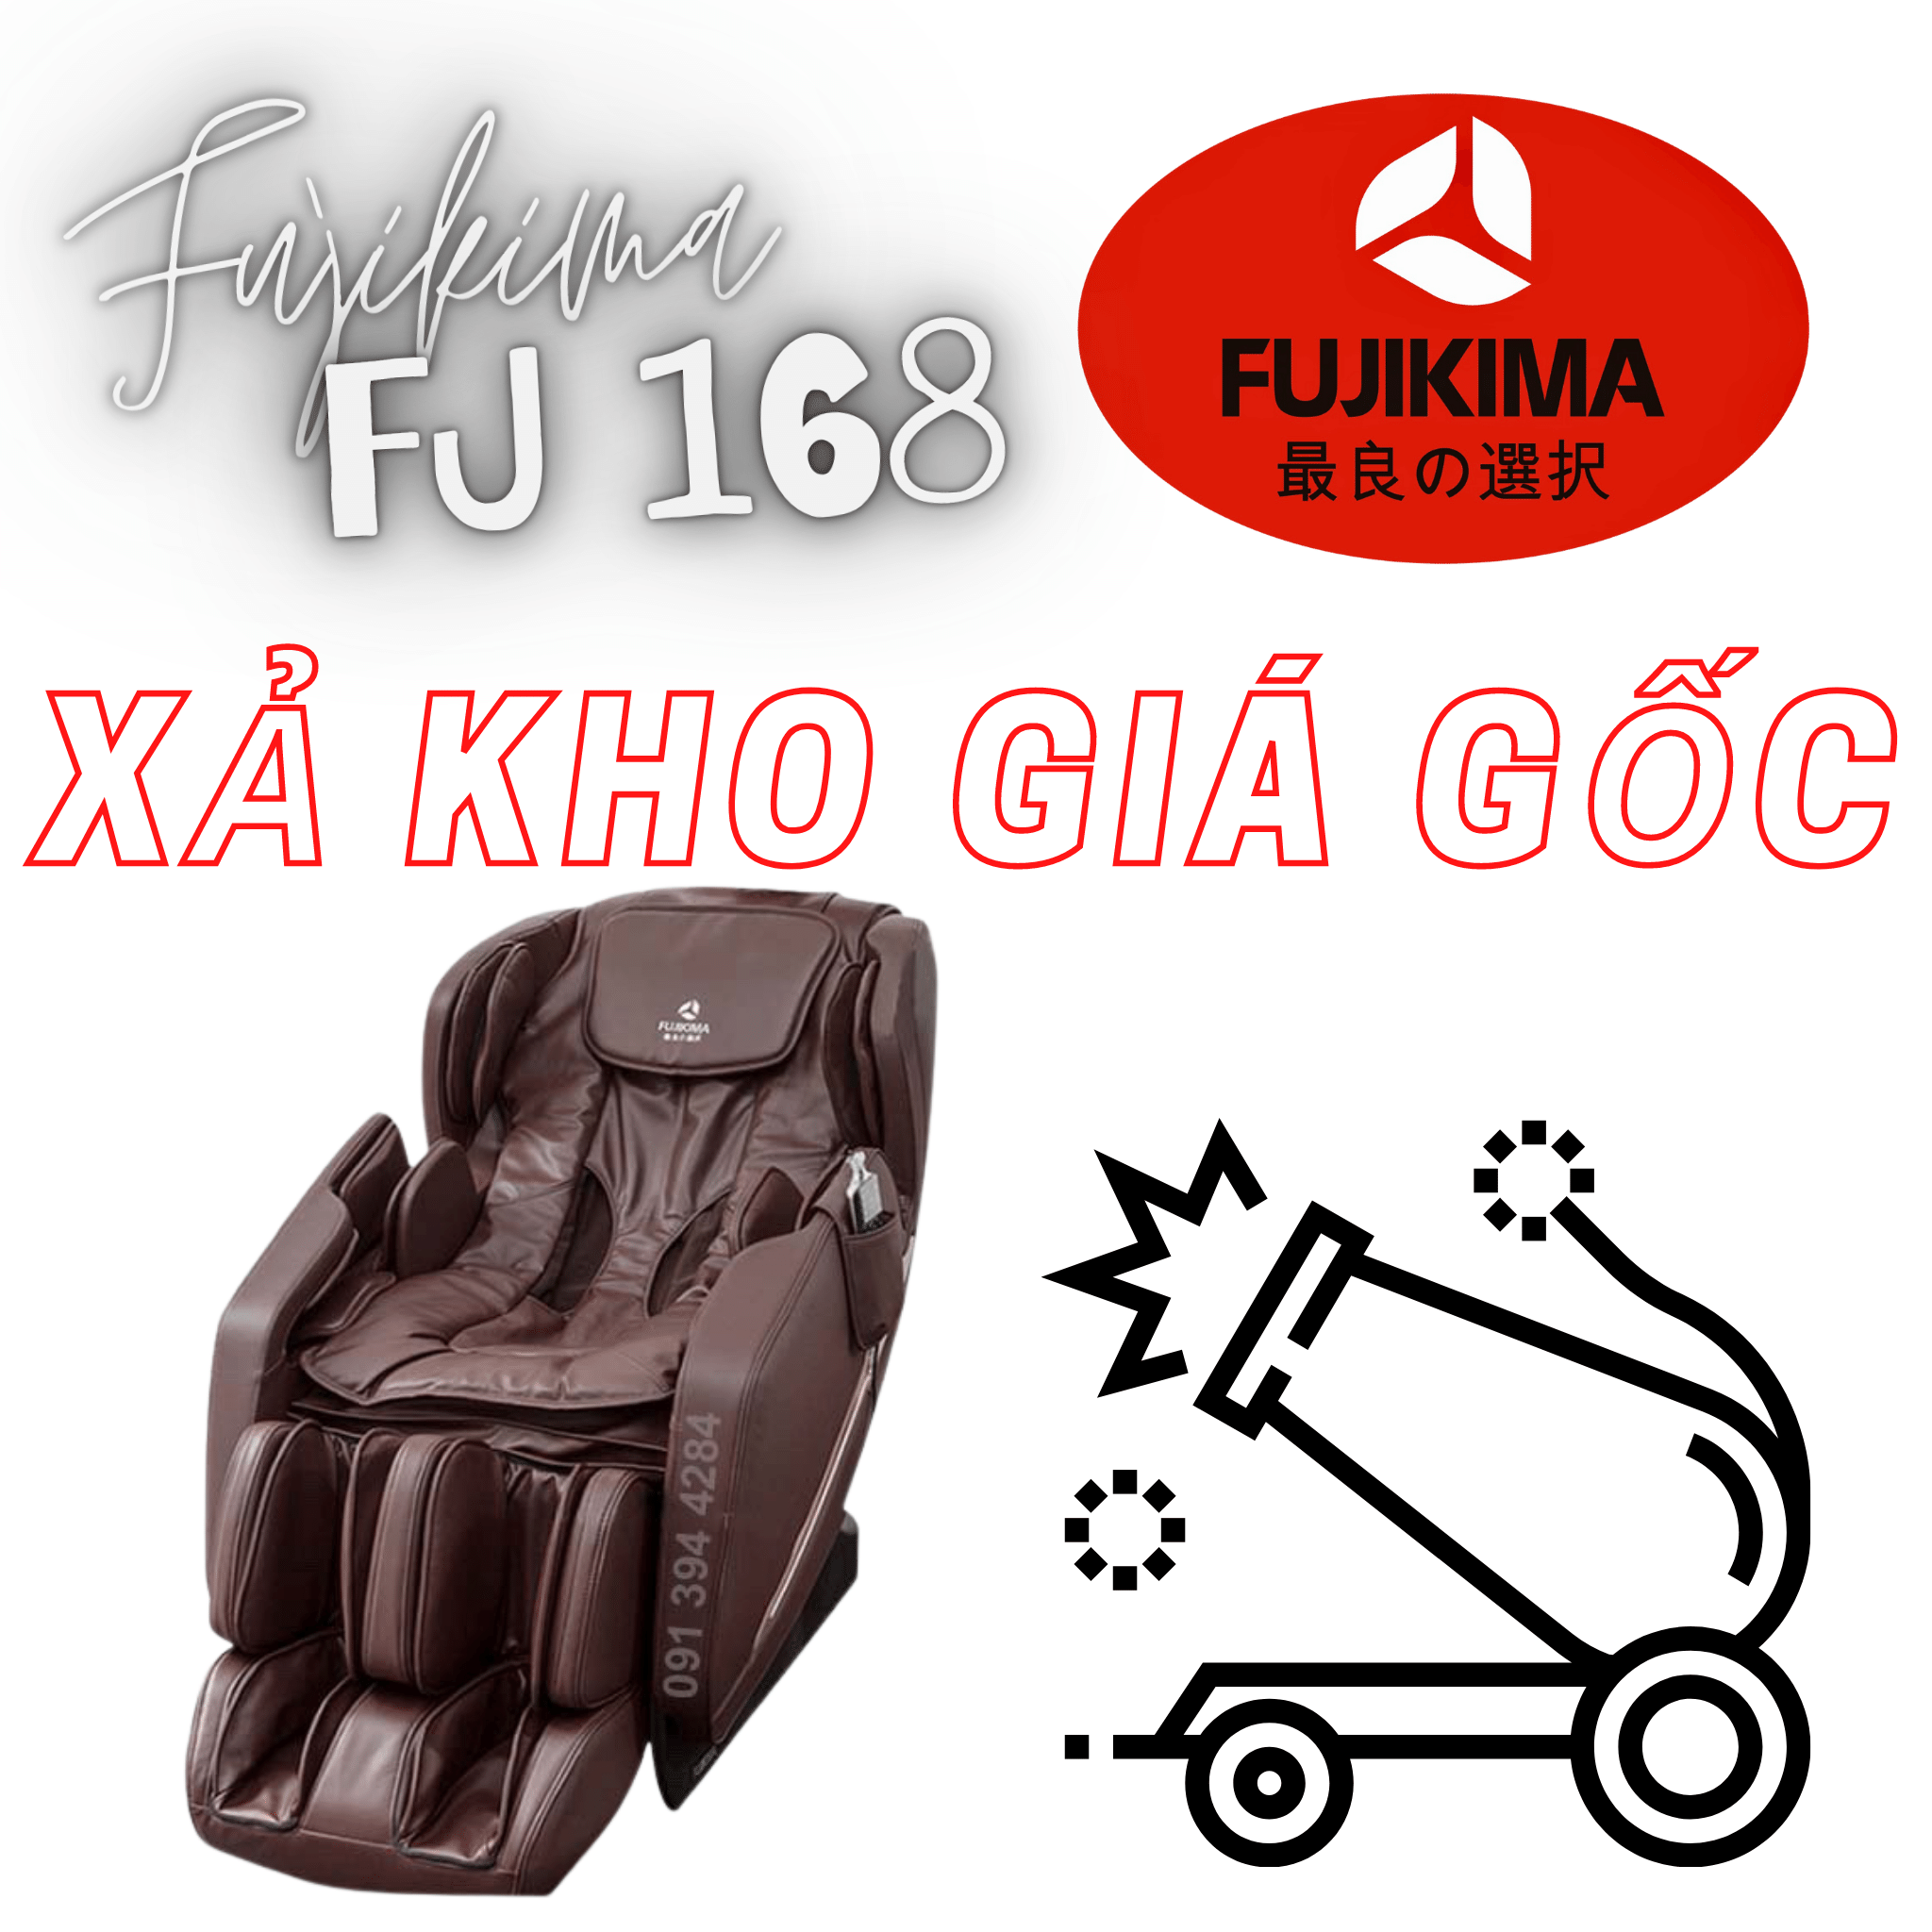 Fujikima FJ 168 Xả kho giá gốc - Thanh lý ghế massage phá giá thị trường - Fujikima 168